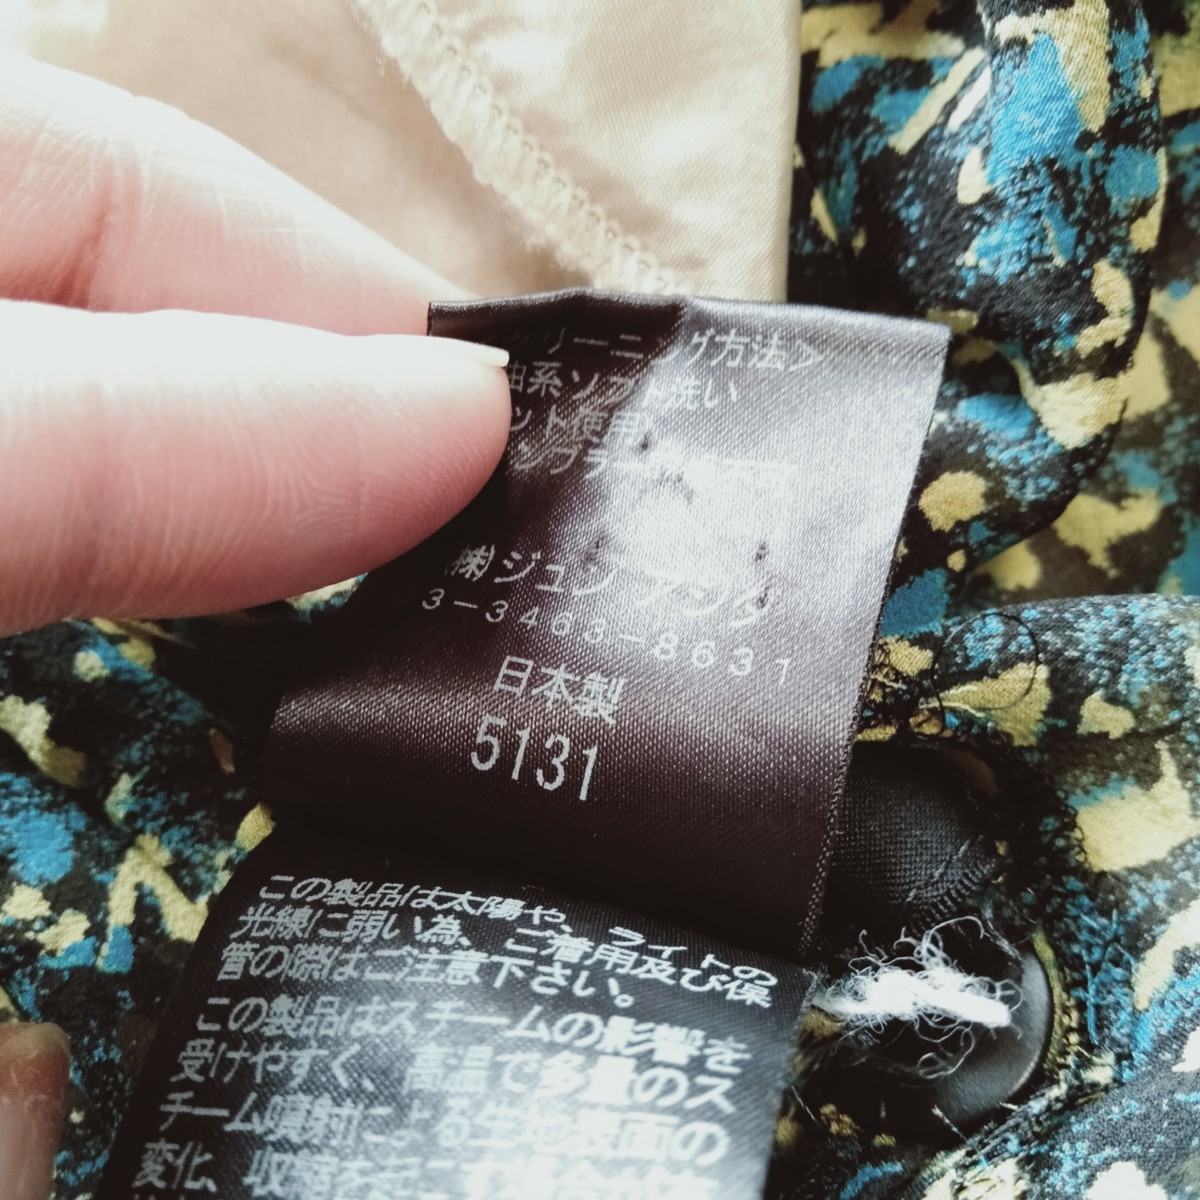 か084 ジュンアシダ jun ashila サイズ11 L相当 絹100％ 5部袖 柄ブラウス シャツ ワキパット付 スカーフ付 洋服_画像5